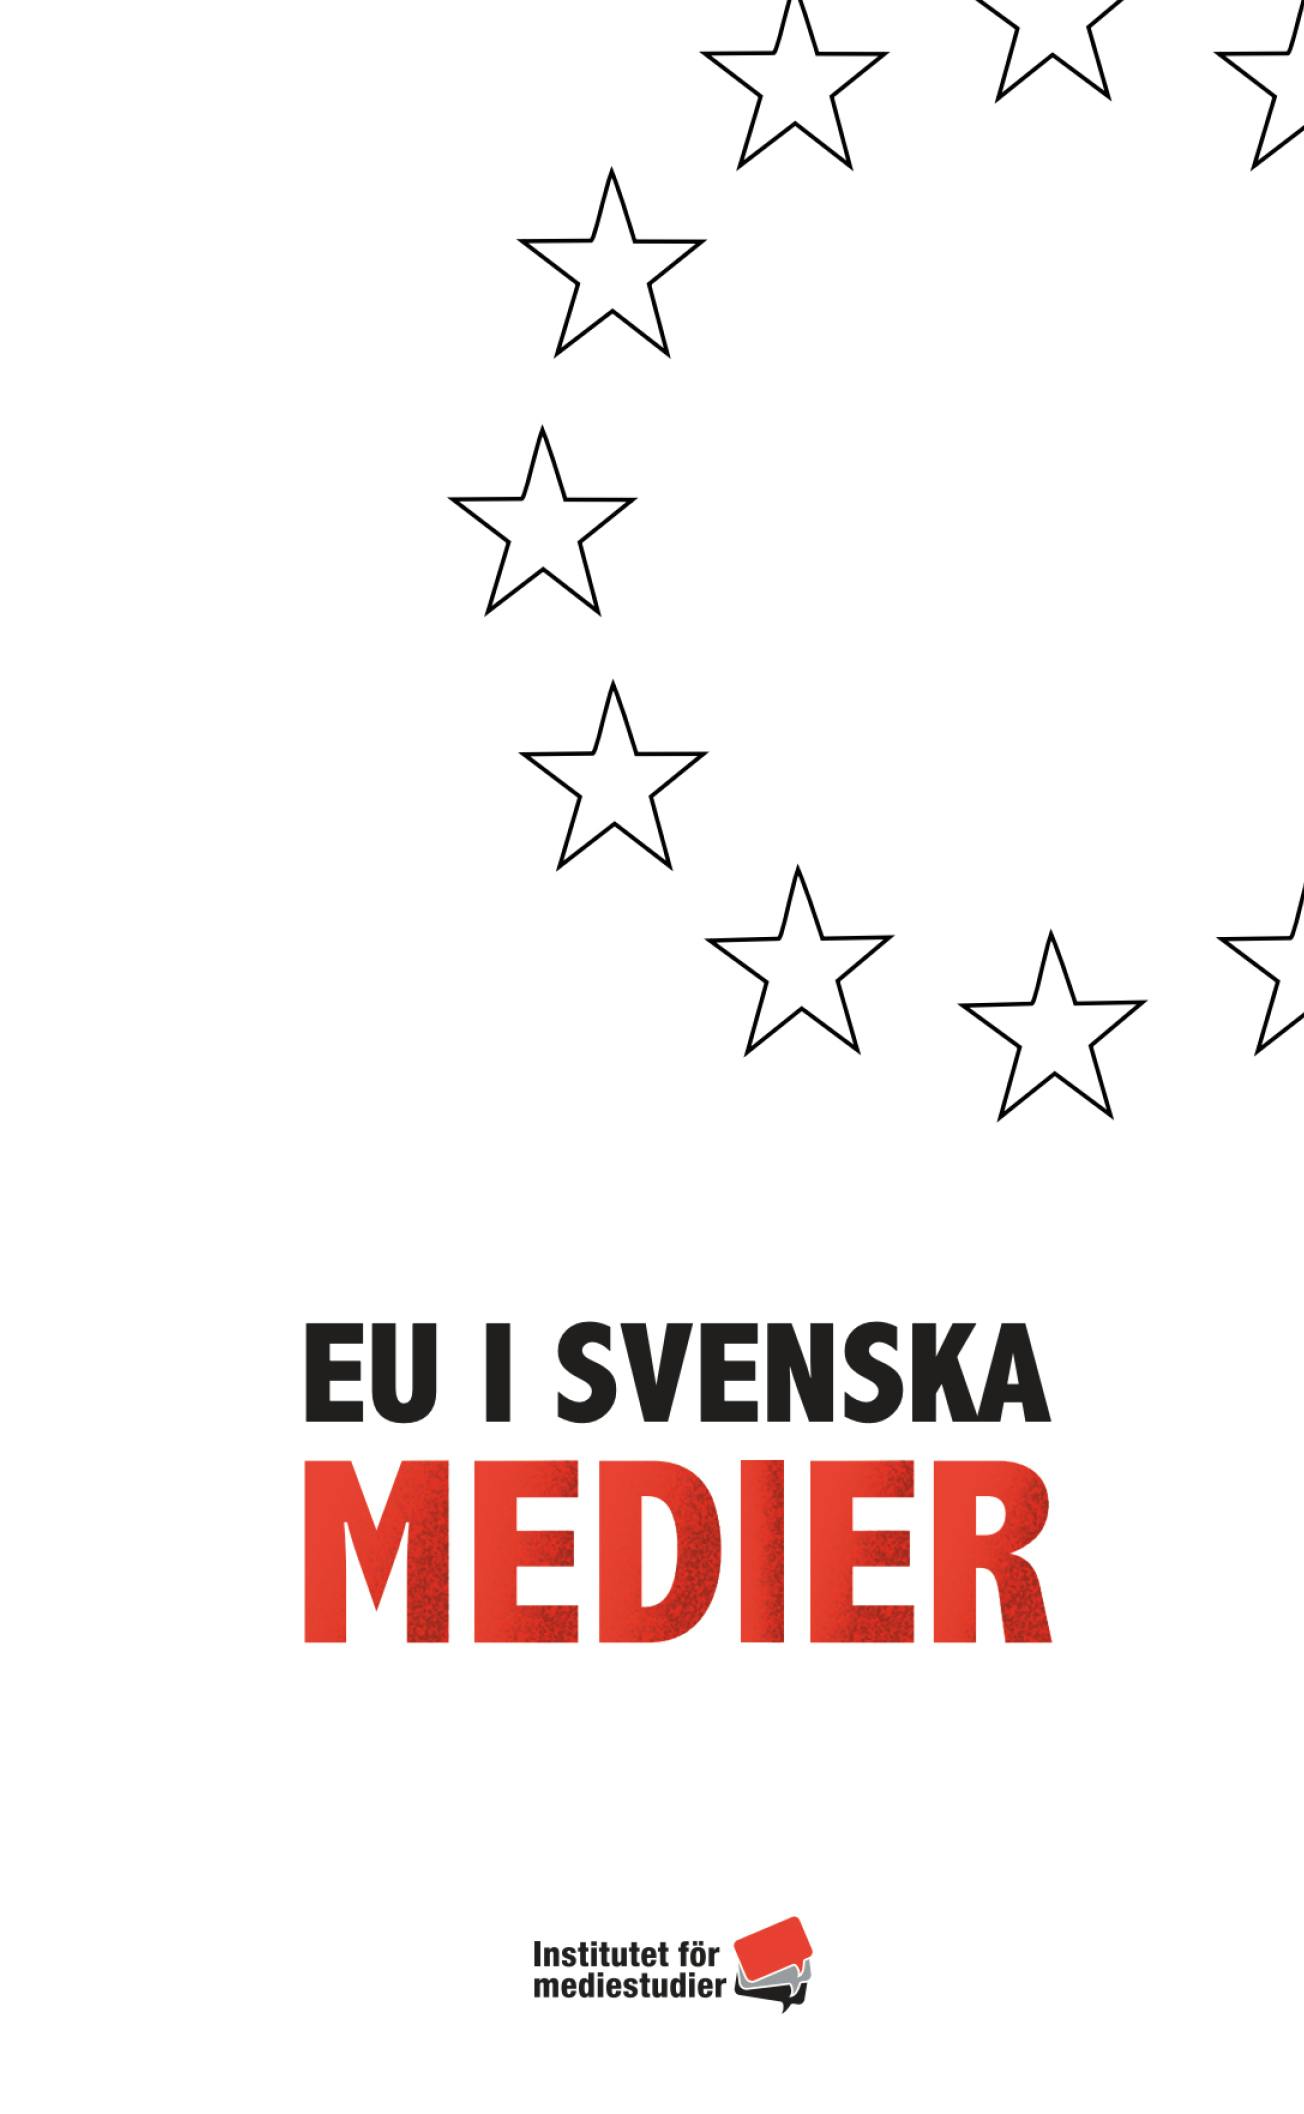 Report: EU i svenska medier cover image